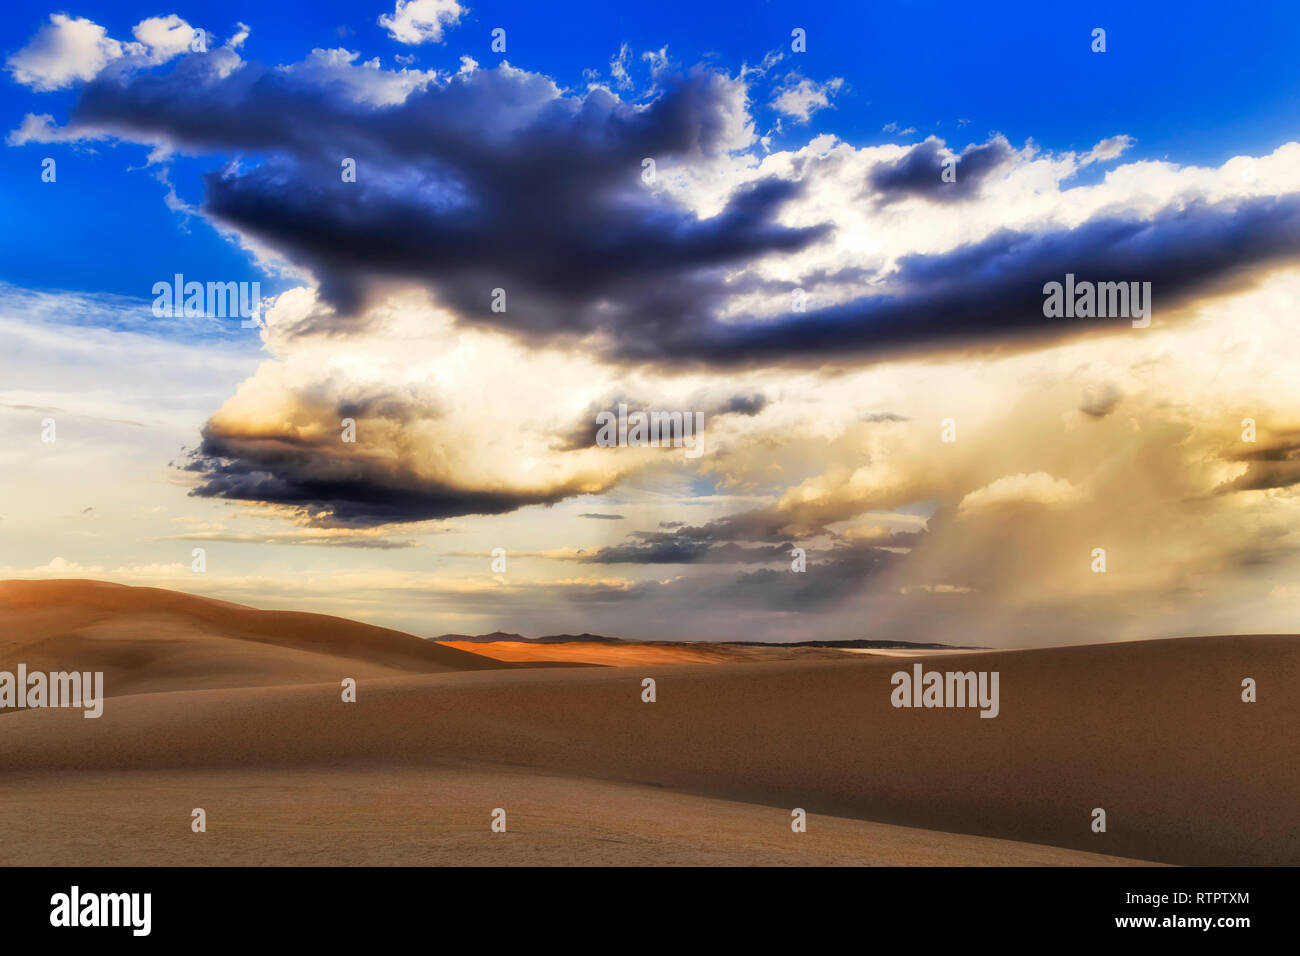 Dunes de sable désert aride sur Stockton Beach de l'Australie pendant un temps orageux avec d'énormes masses de nuages structurés dans le ciel. Banque D'Images